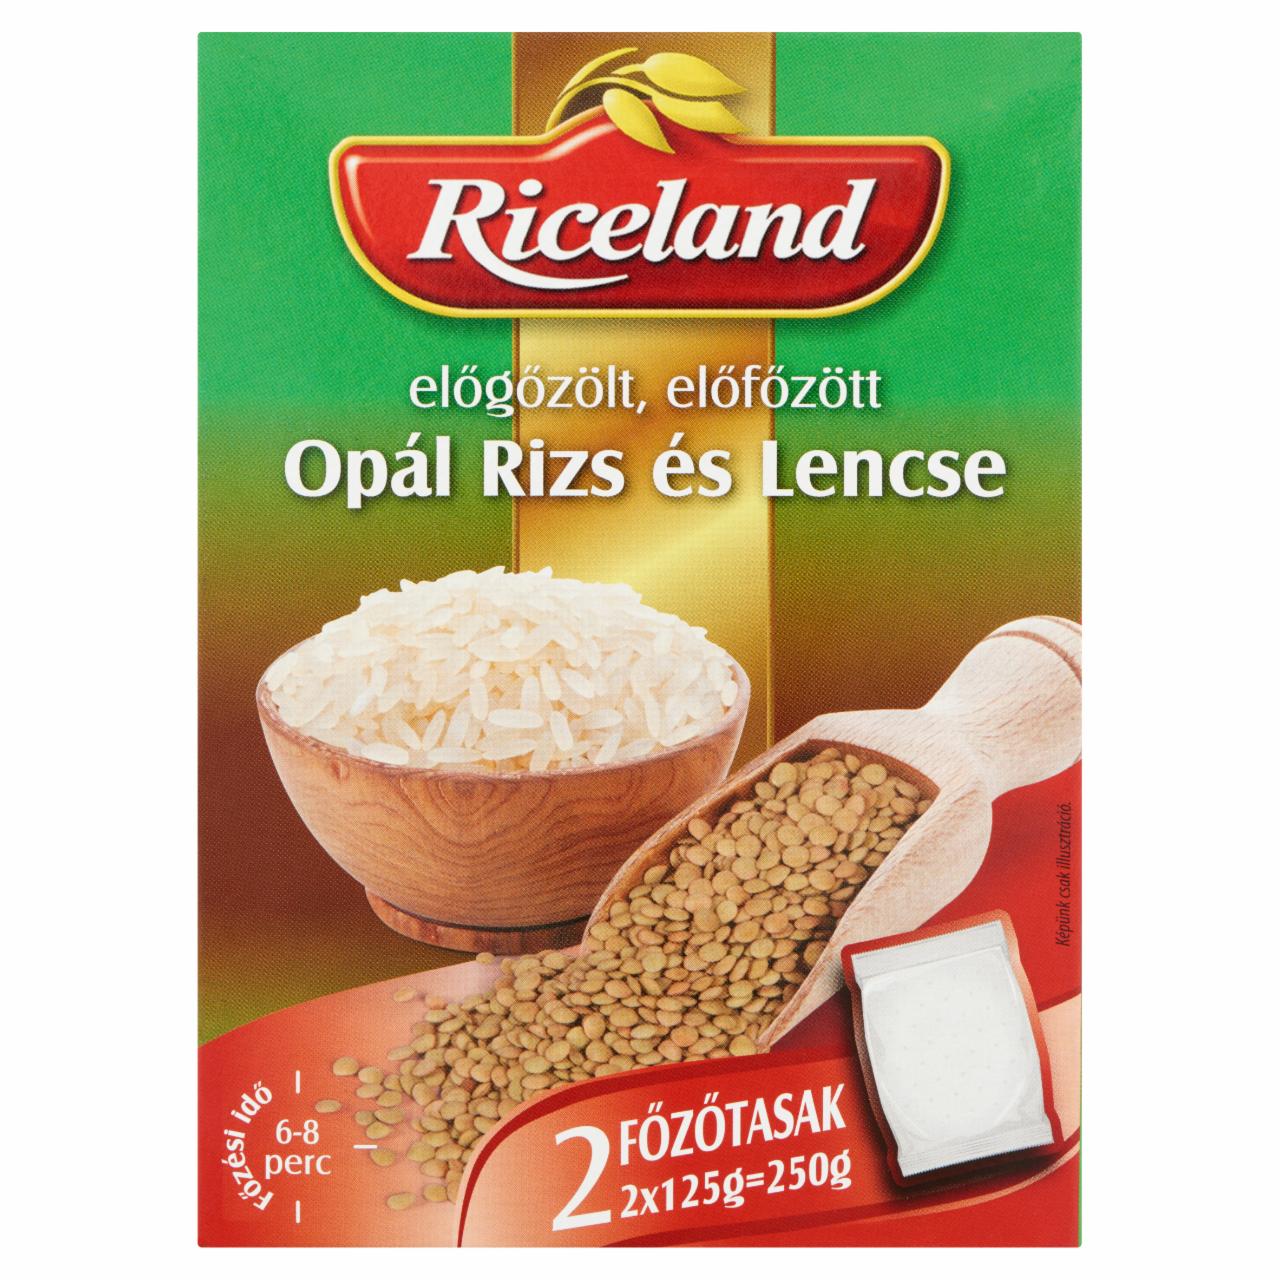 Képek - Riceland előgőzölt, előfőzött Opál rizs és Lencse 2 x 125 g